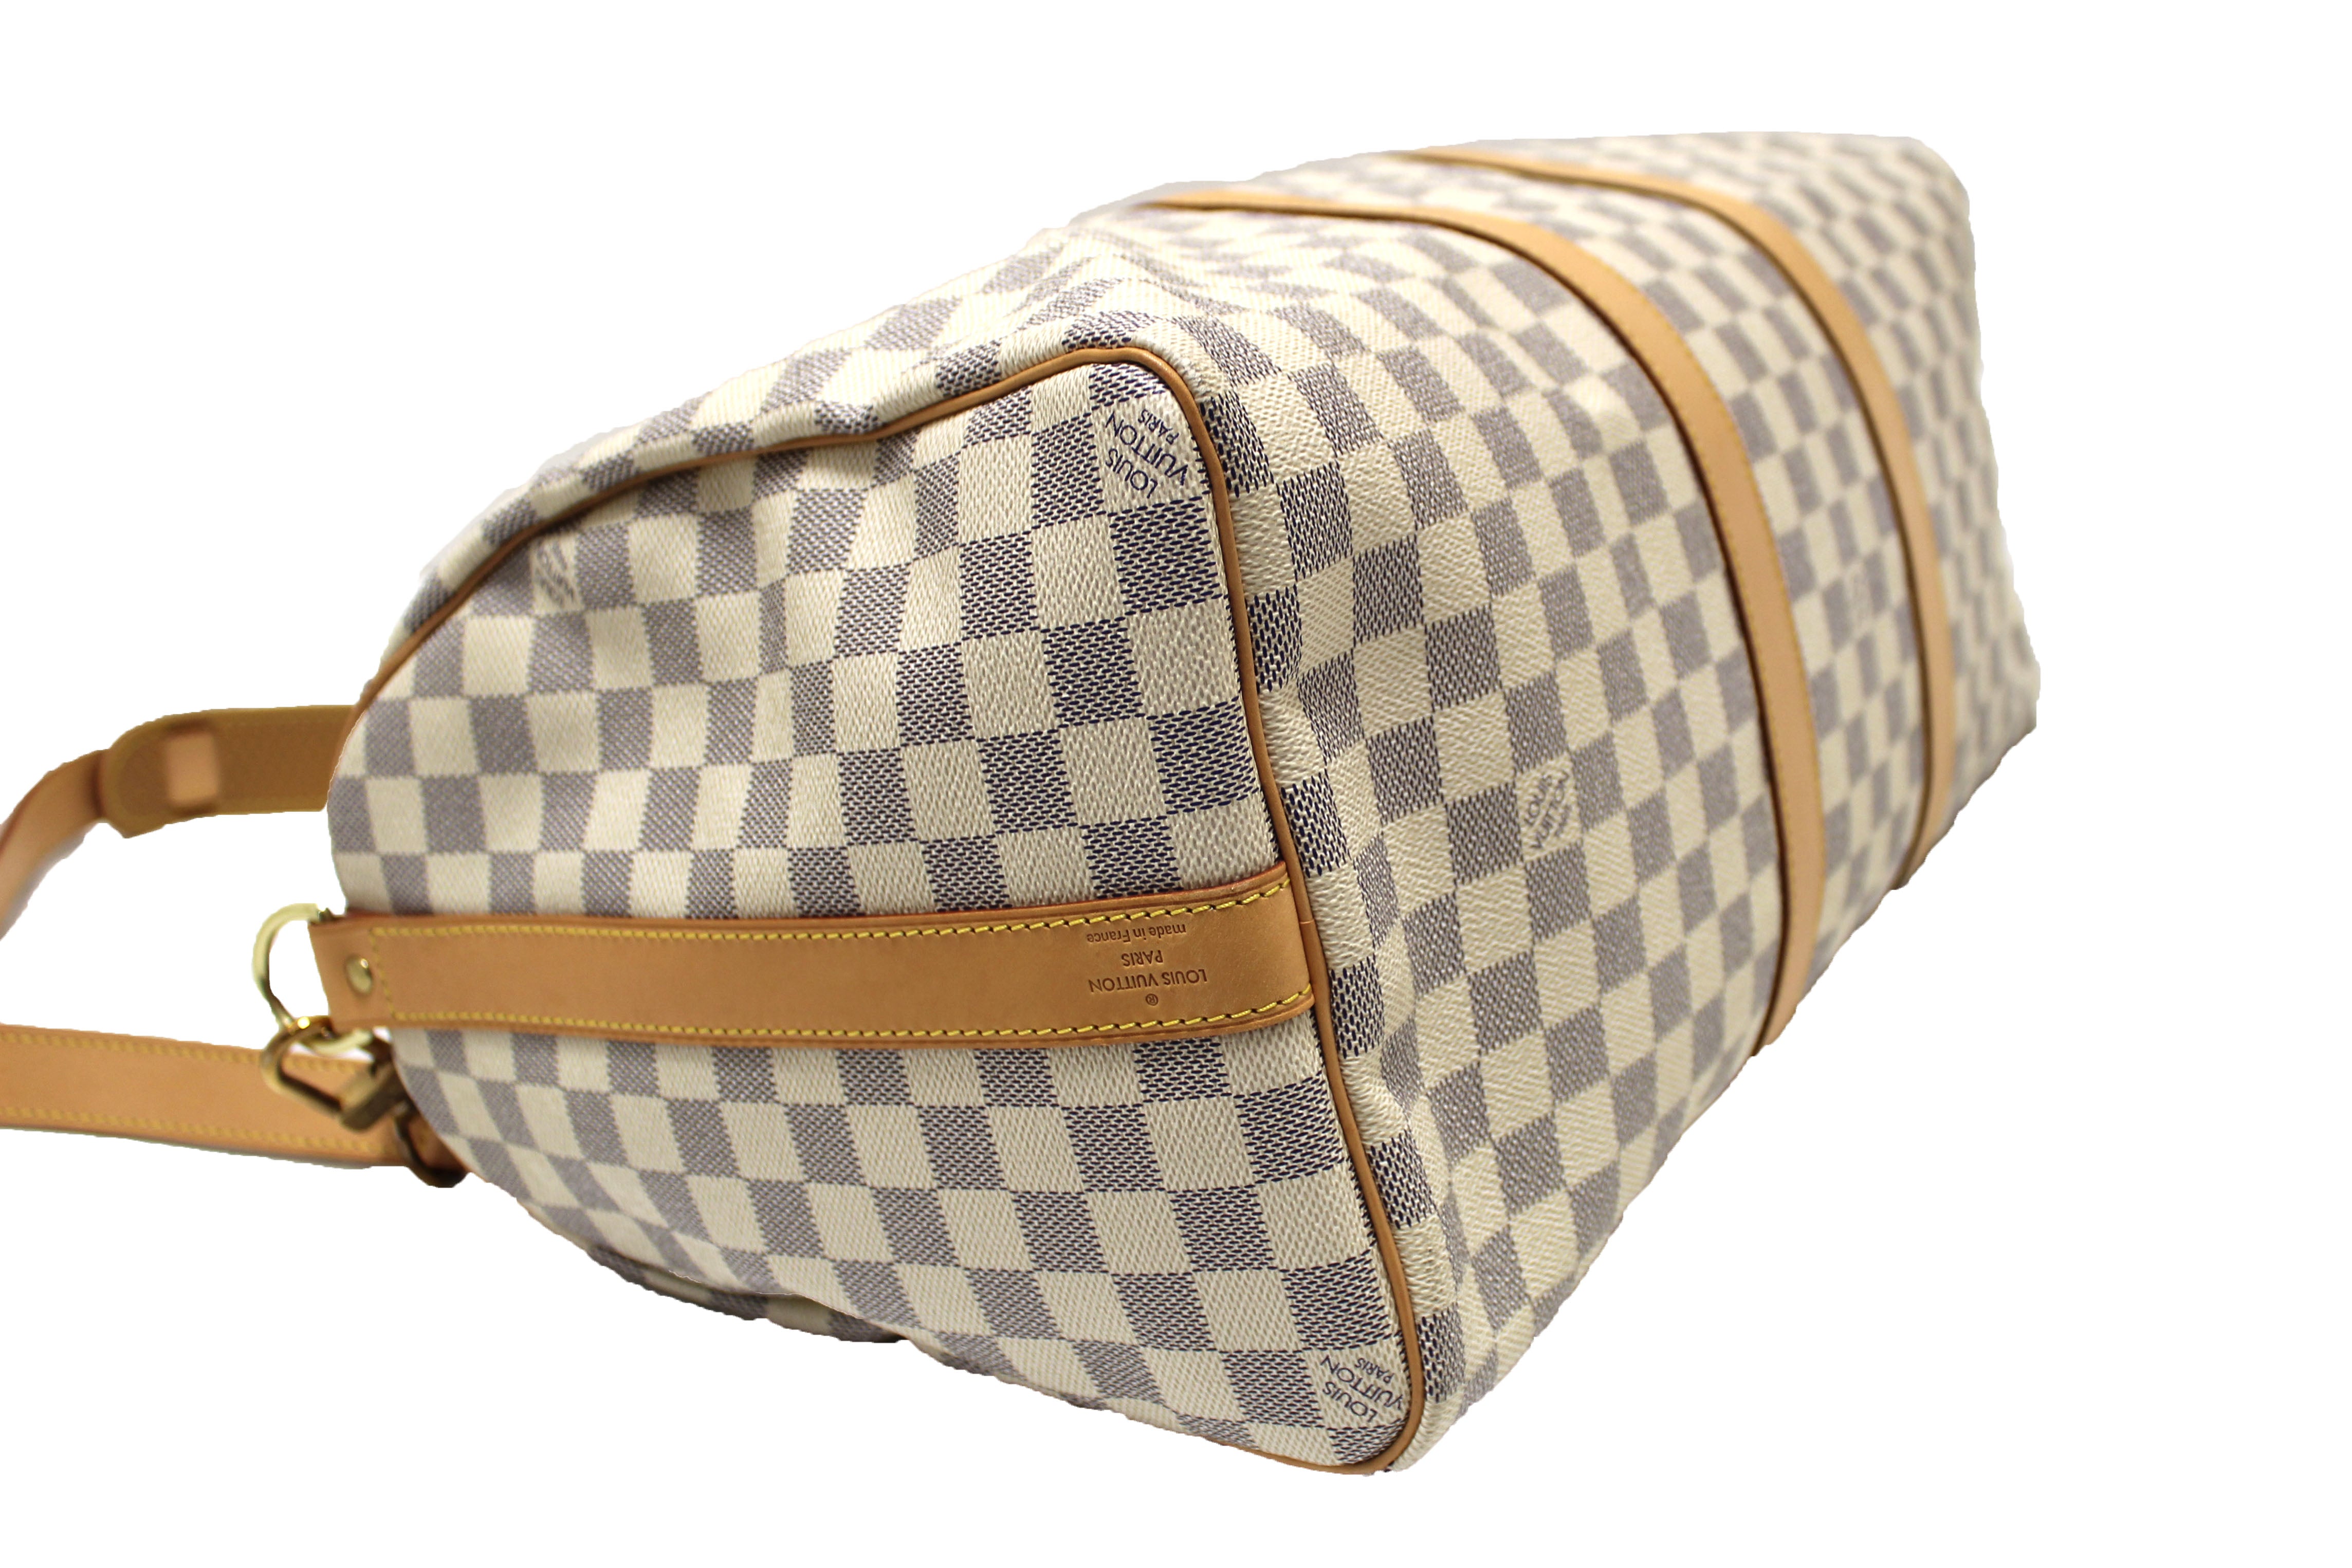 Authentic Louis Vuitton Damier Azur Keepall Bandouliere 45 Travel Bag